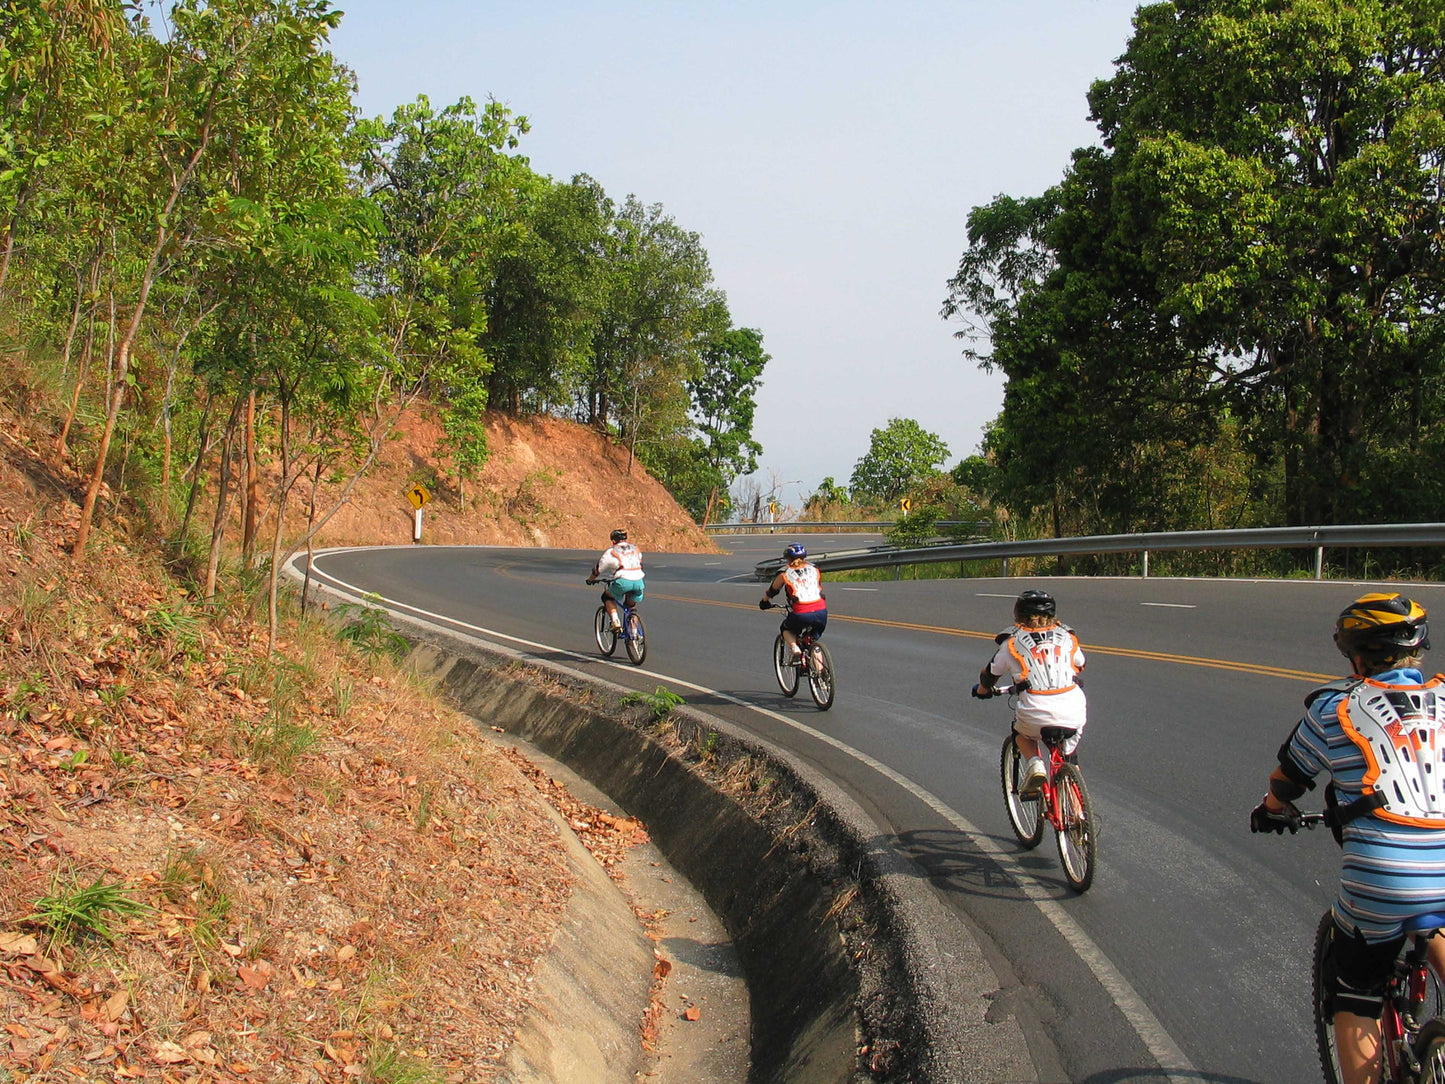 Trip # 9 Doi Suthep National Park Cultural Hike and Leisure DH Biking   1950฿